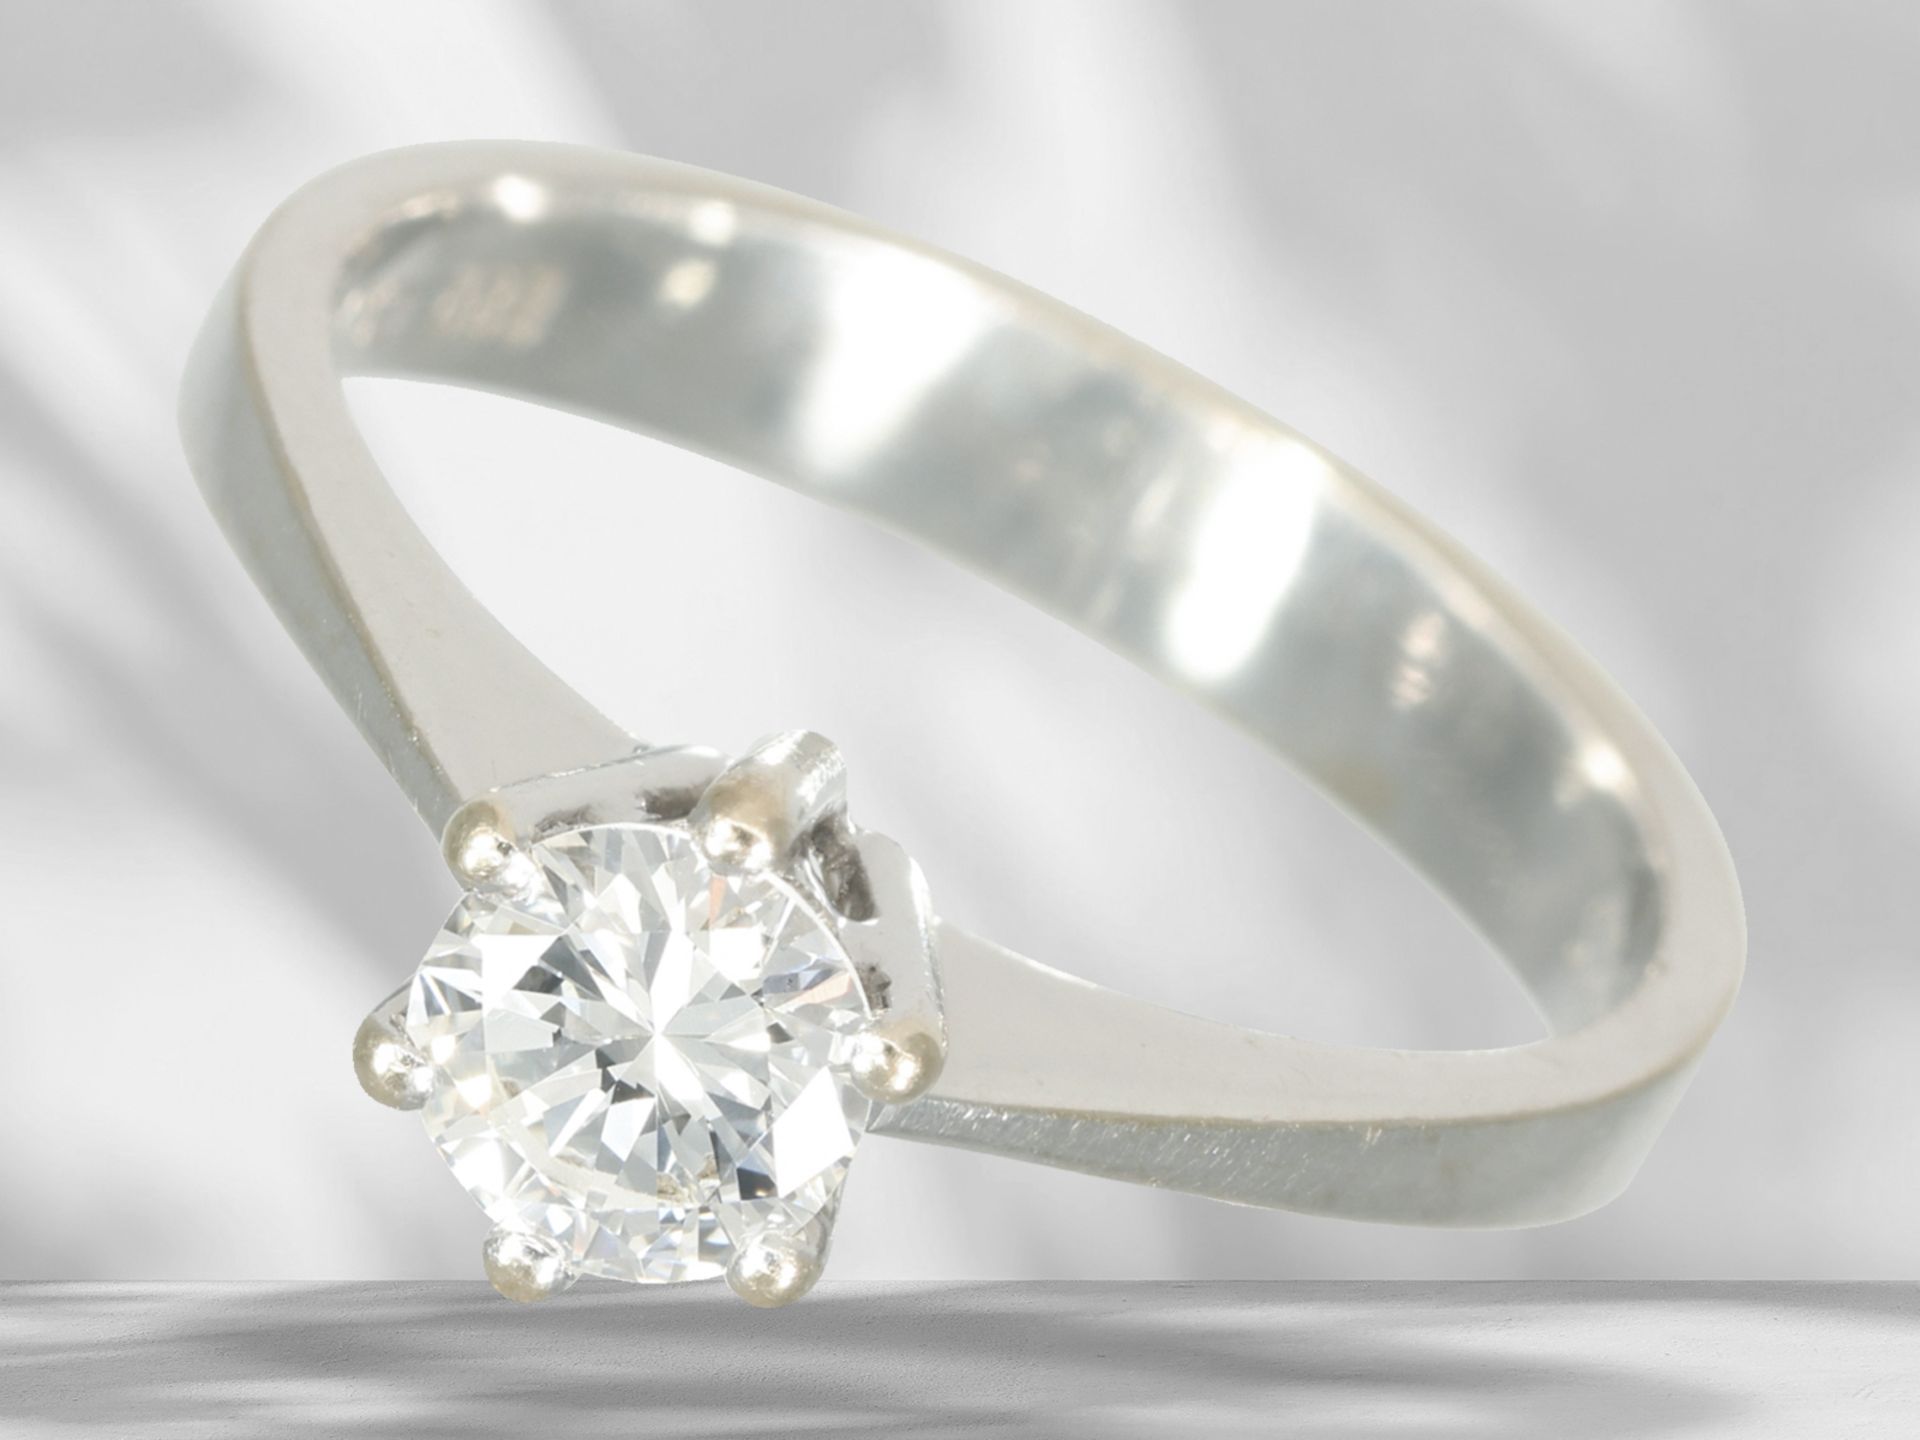 Ring: vintage Solitär-Brillantring, schöner Brillant von ca. 0,52ct, hoher Reinheitsgrad